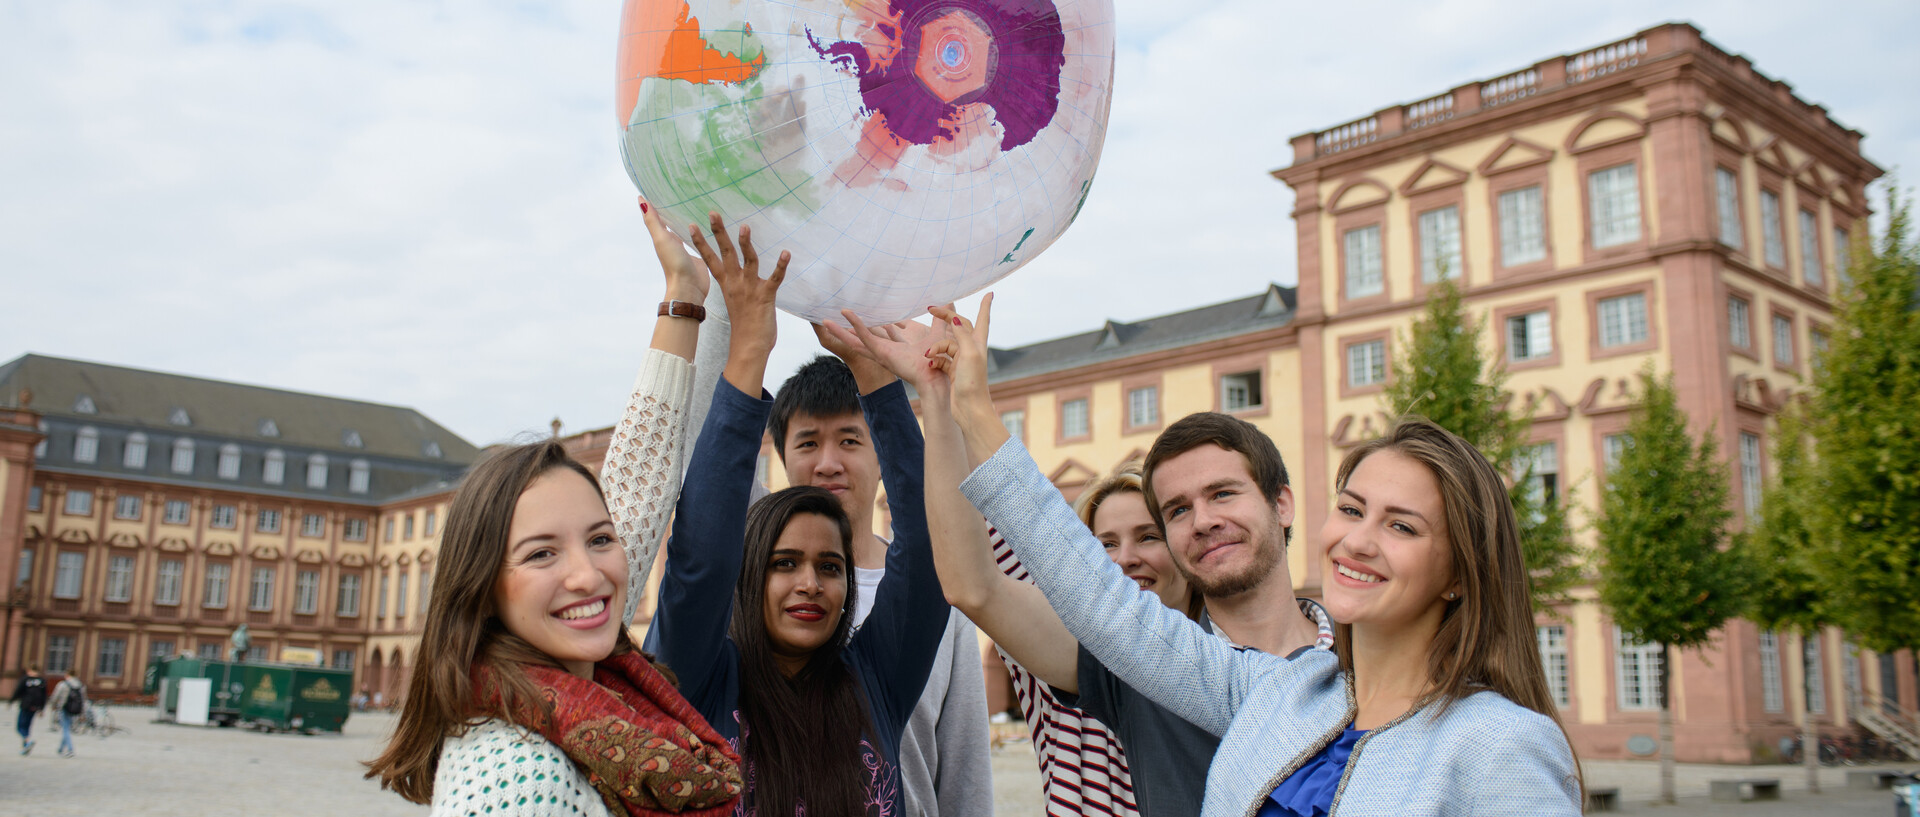 Eine Gruppe Studierender hält einen aufgeblasenen Globus vor dem Schloss in die Luft